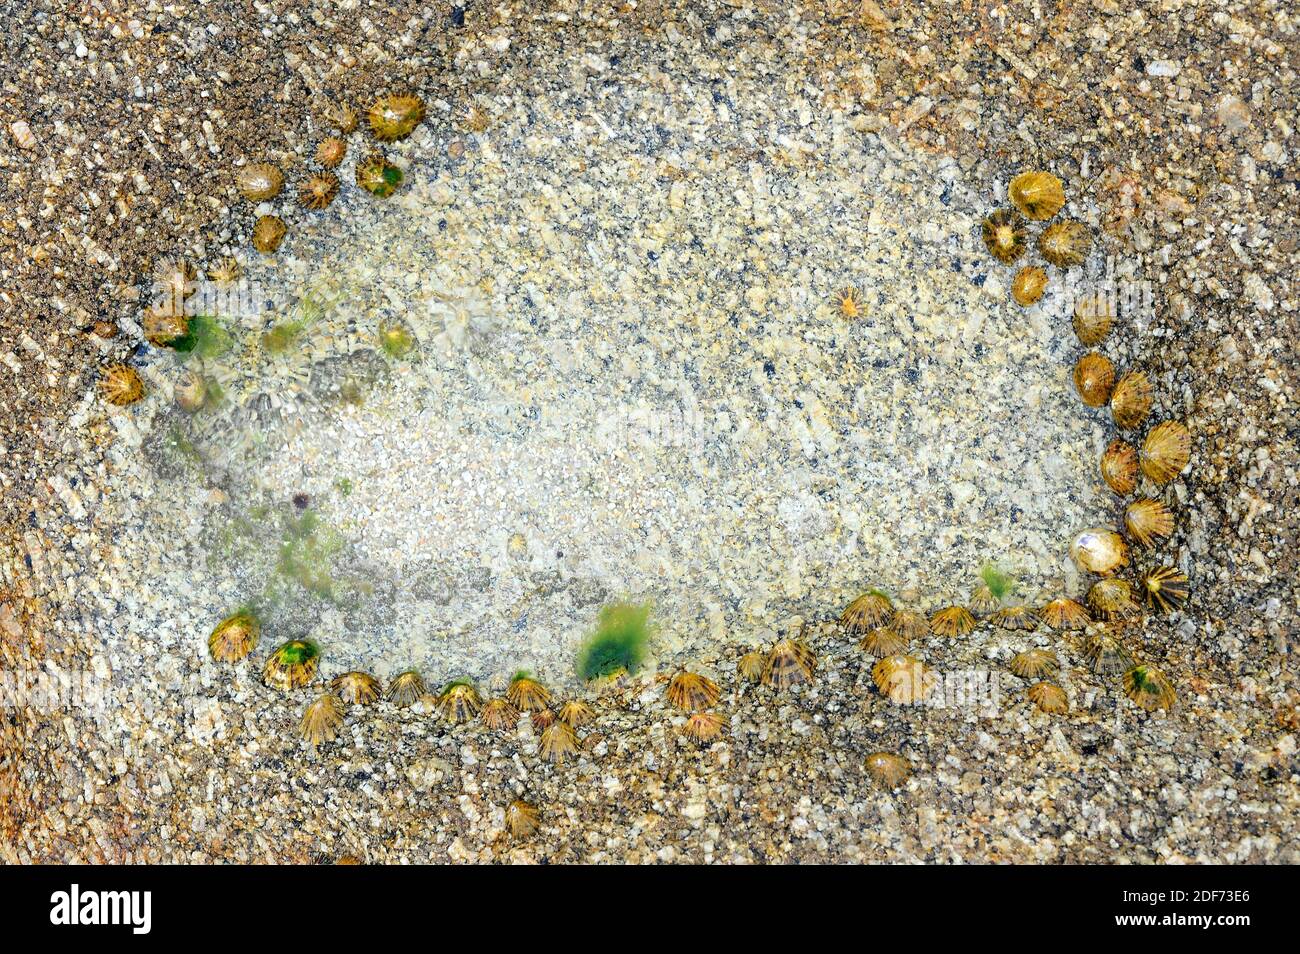 Gemeiner Weichtier (Patella vulgata) ist eine essbare Meeresmuschel. Dieses Foto wurde in der Bretagne, Frankreich, aufgenommen. Stockfoto